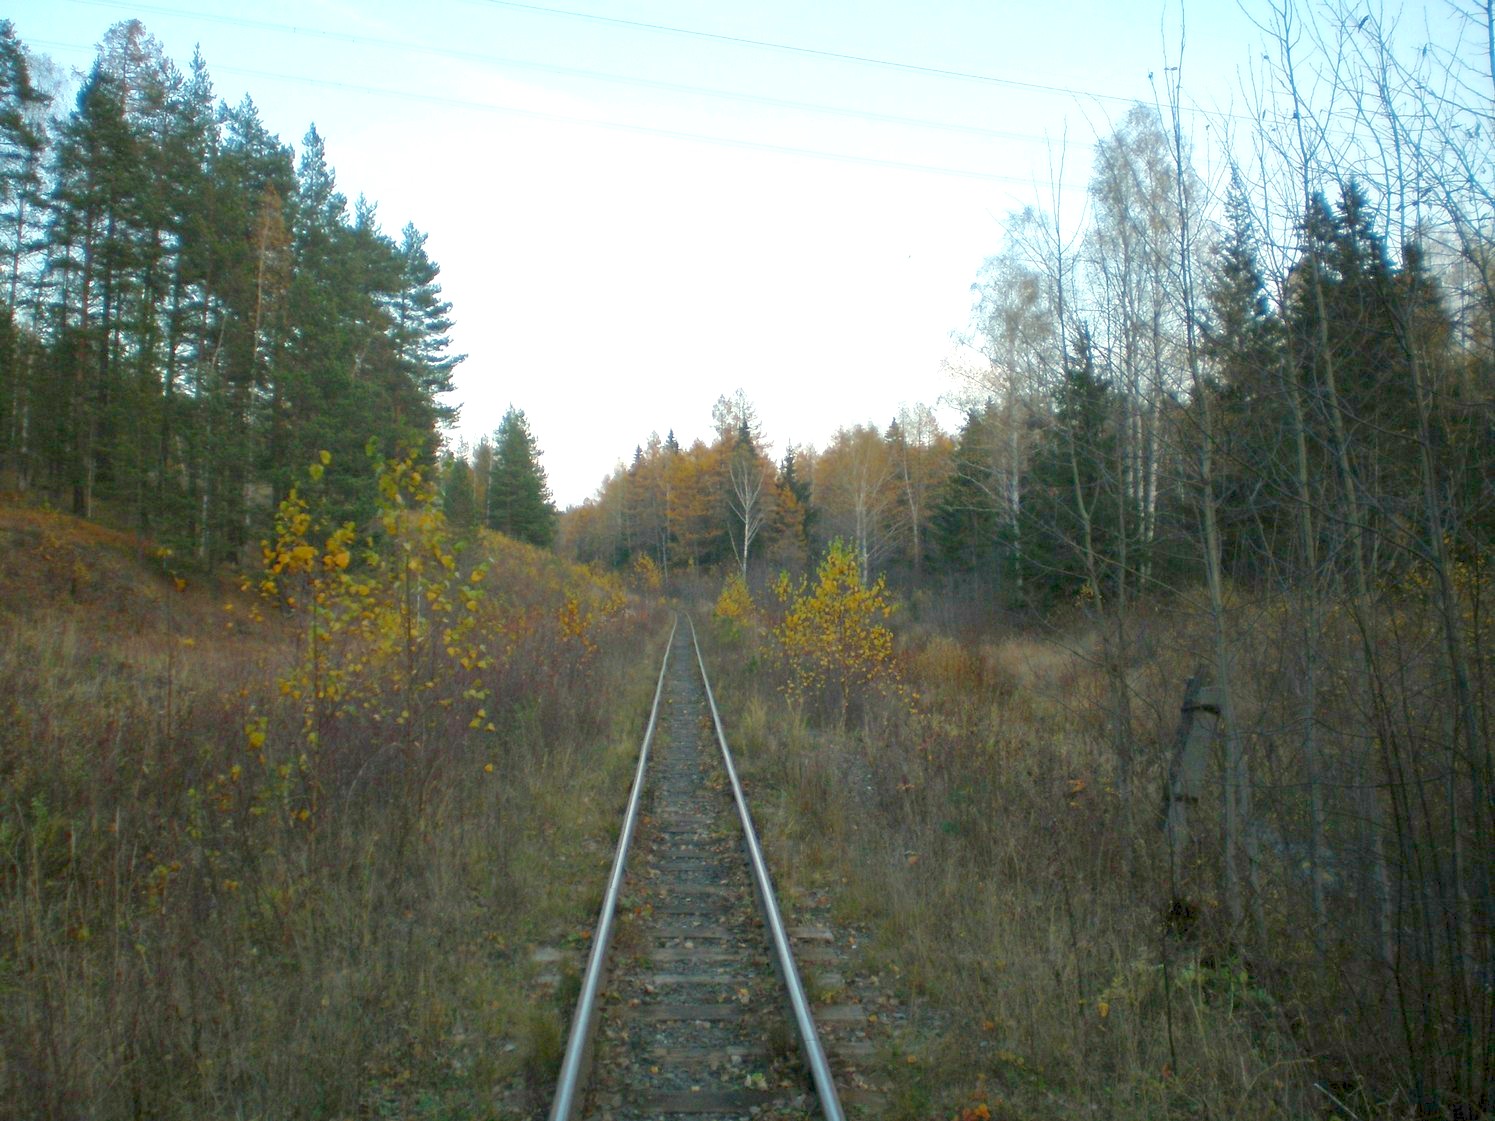 Висимо-Уткинская узкоколейная железная дорога  — фотографии, сделанные в 2007 году (часть 13)